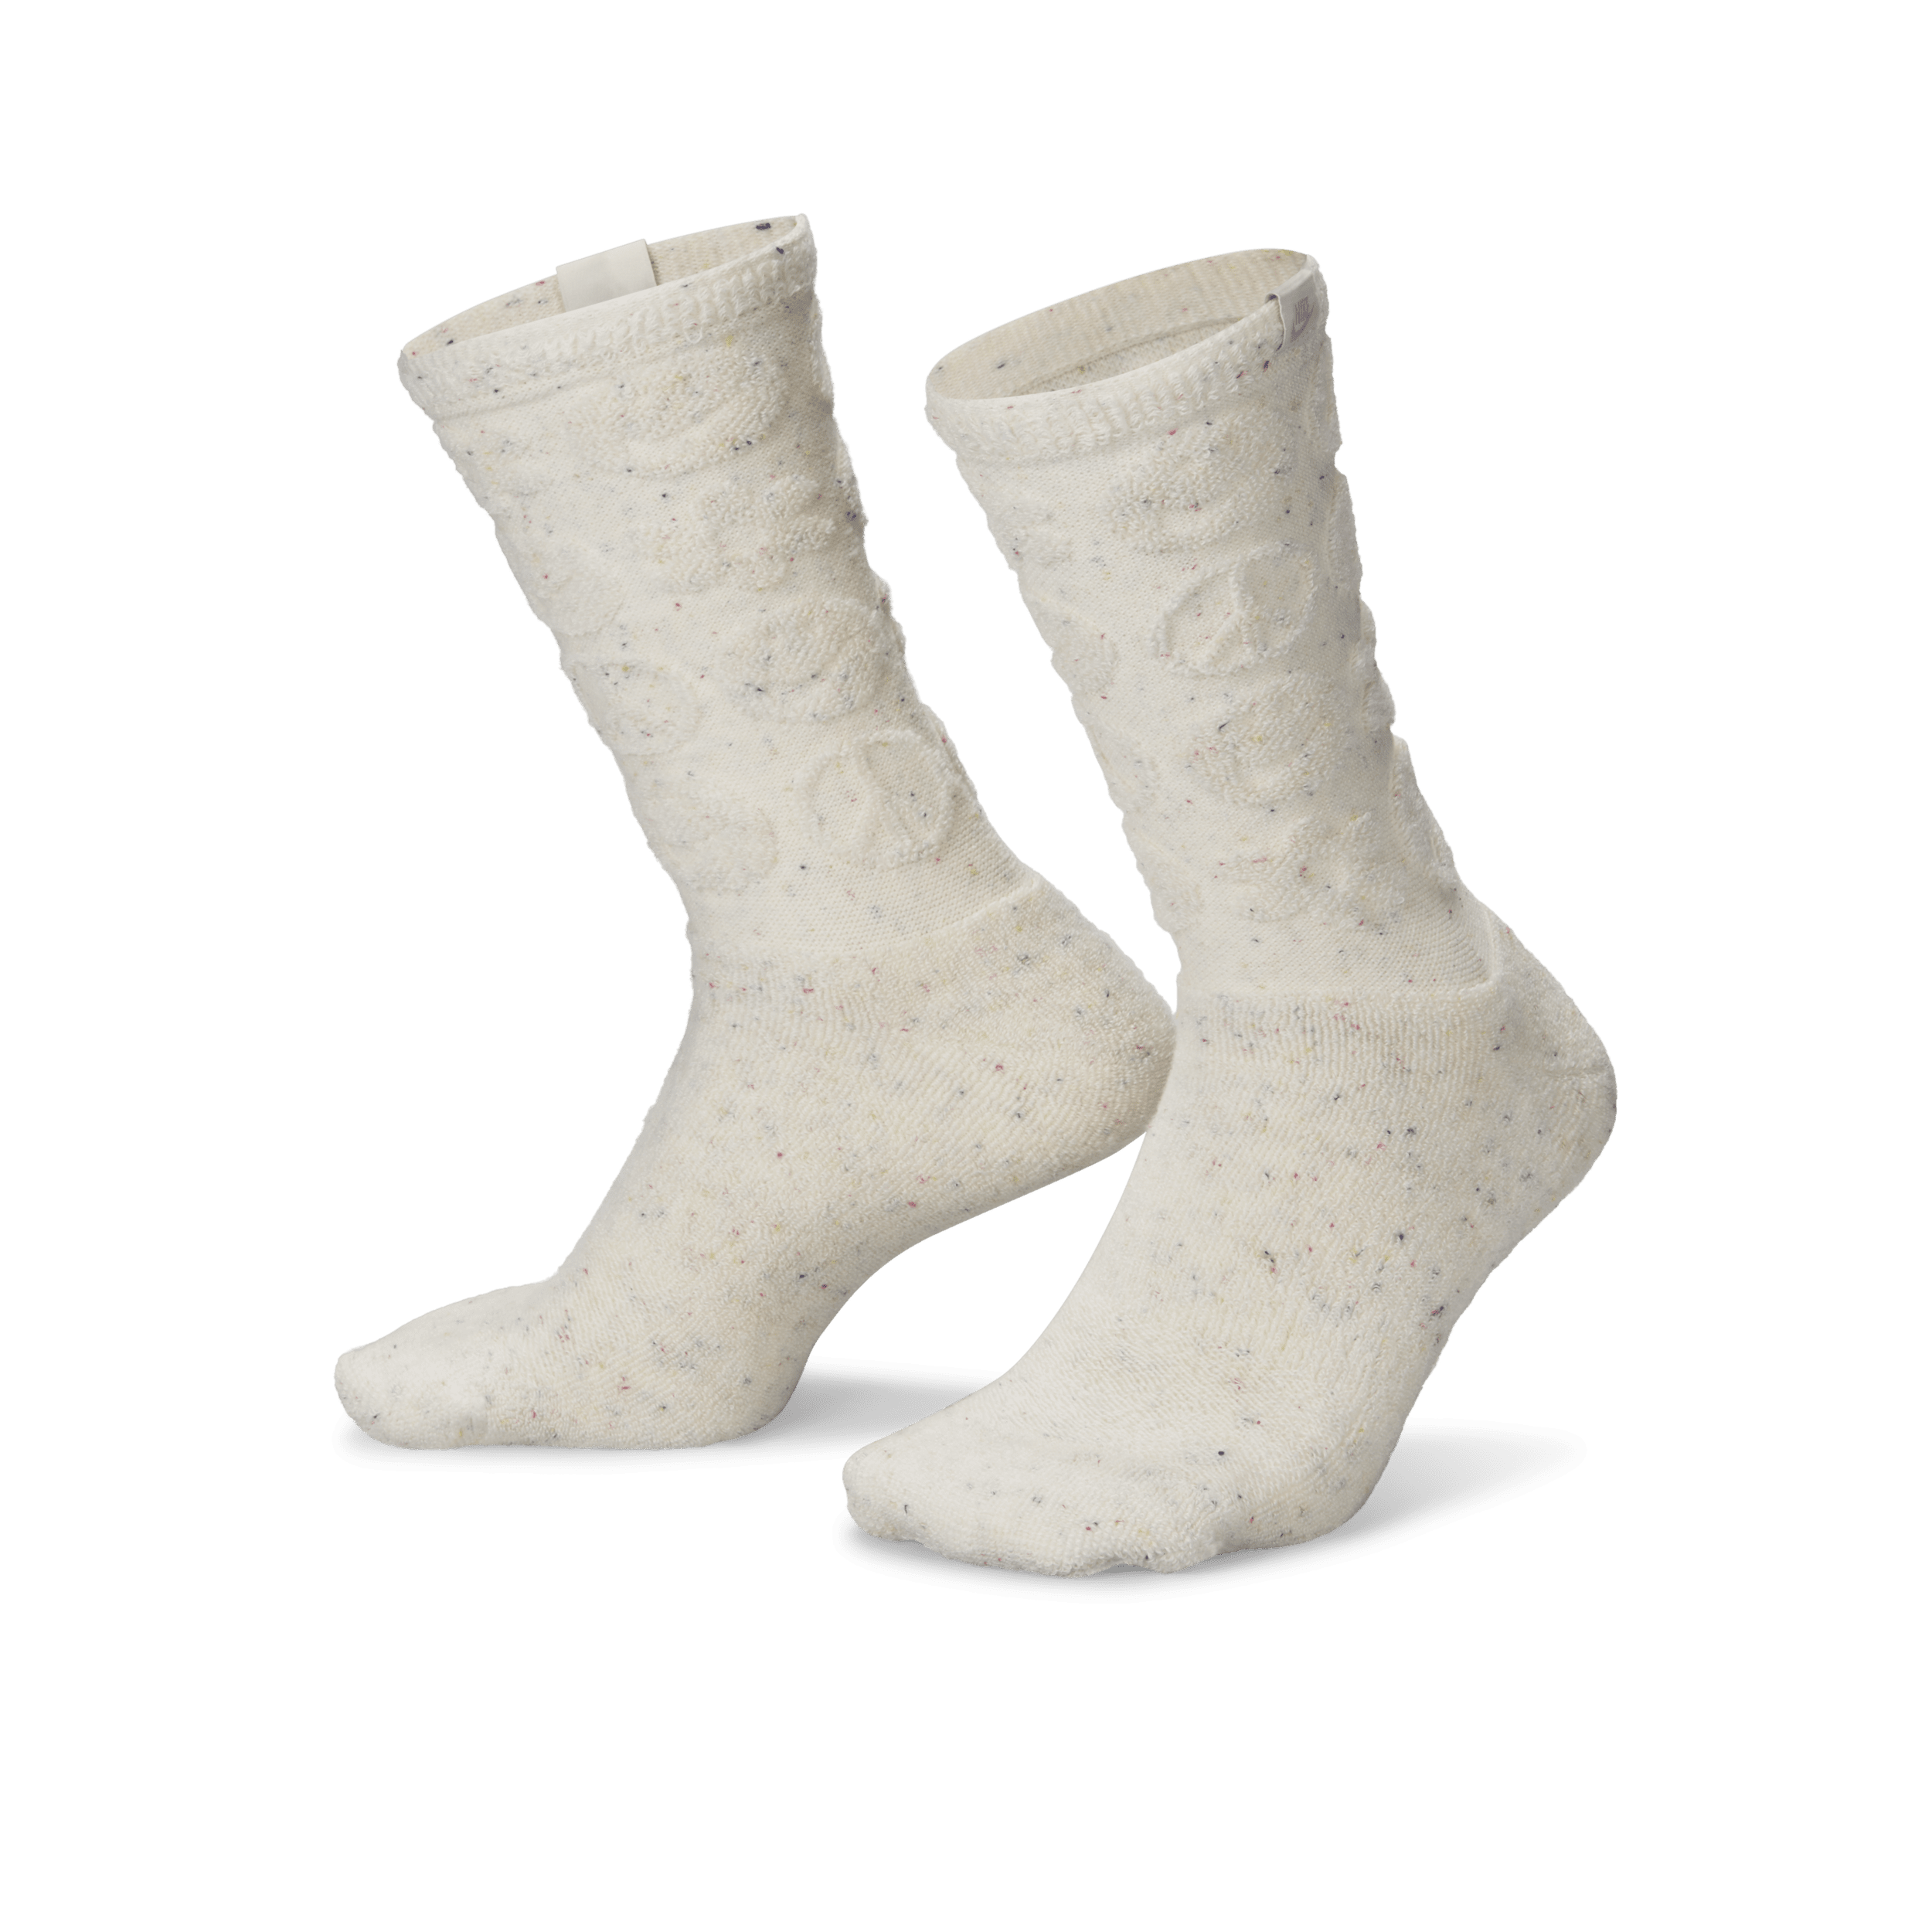 Nike Everyday Plus Crew sokken met demping (1 paar) - Wit